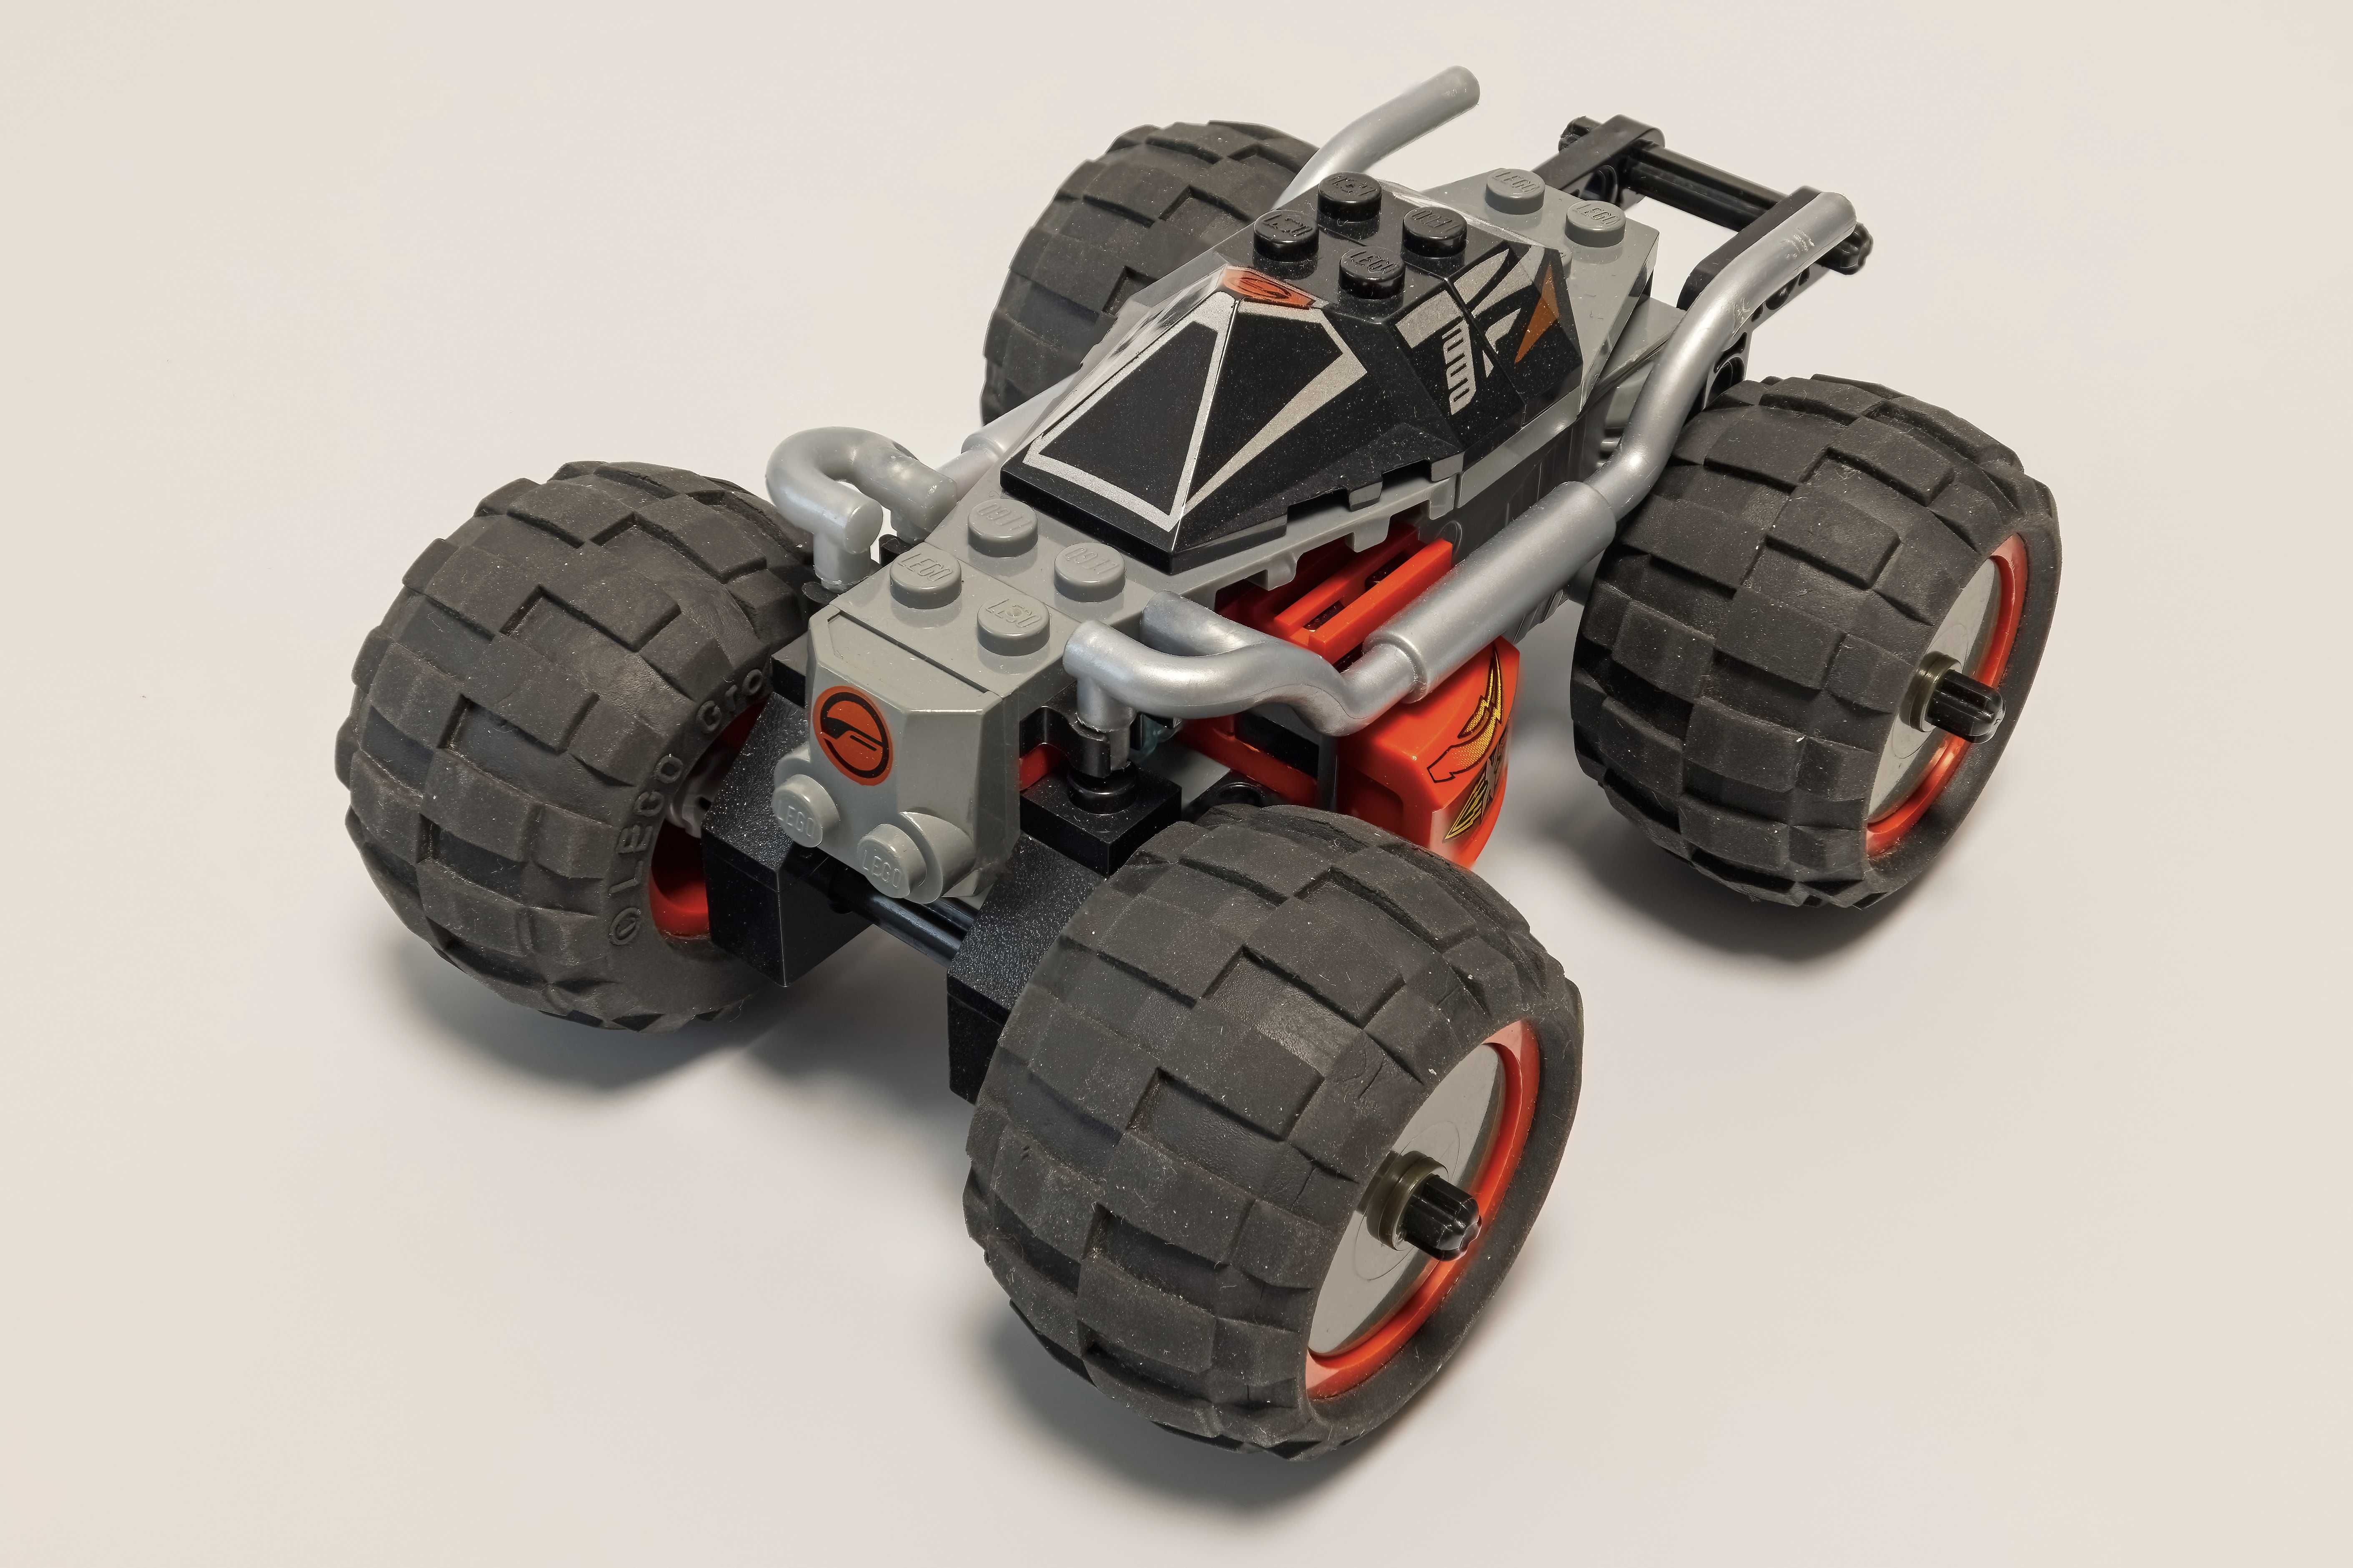 LEGO RACERS - zestawy 8356 (Jungle Monster) i 8385 (Exo Stealth)